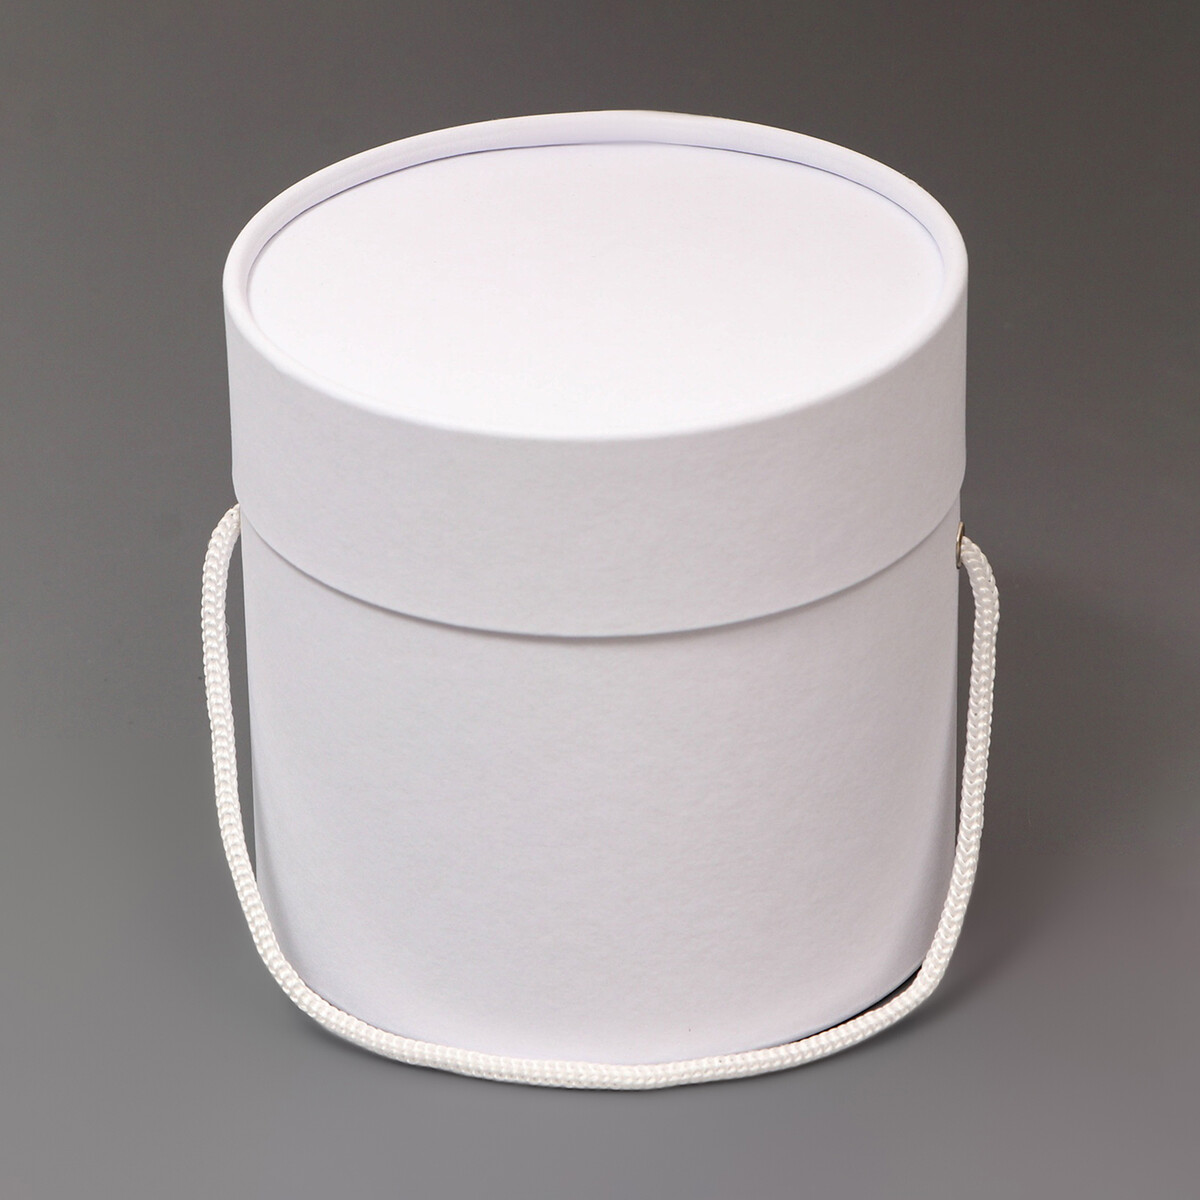 Подарочная коробка, круглая, белая,с шнурком, 12 х 12 см тарелка обеденная стекло 25 см круглая cadix luminarc h4132 белая